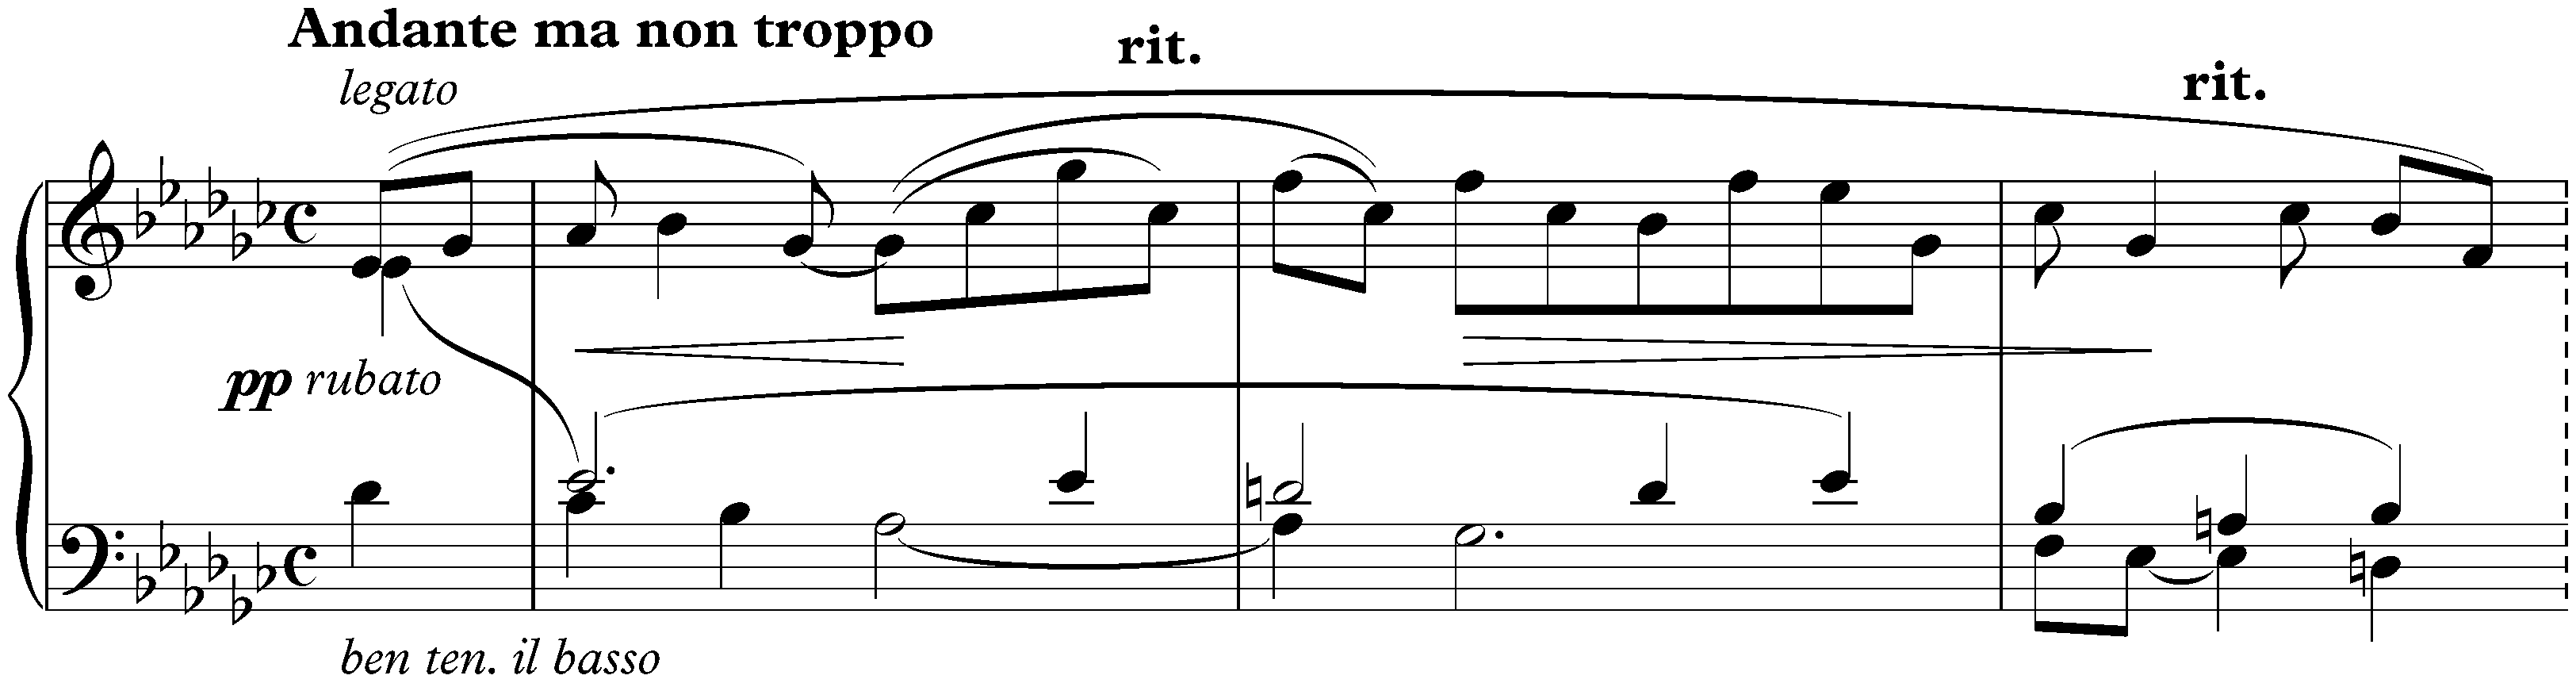 Nine Preludes, op. 1; 8. Andante ma non troppo